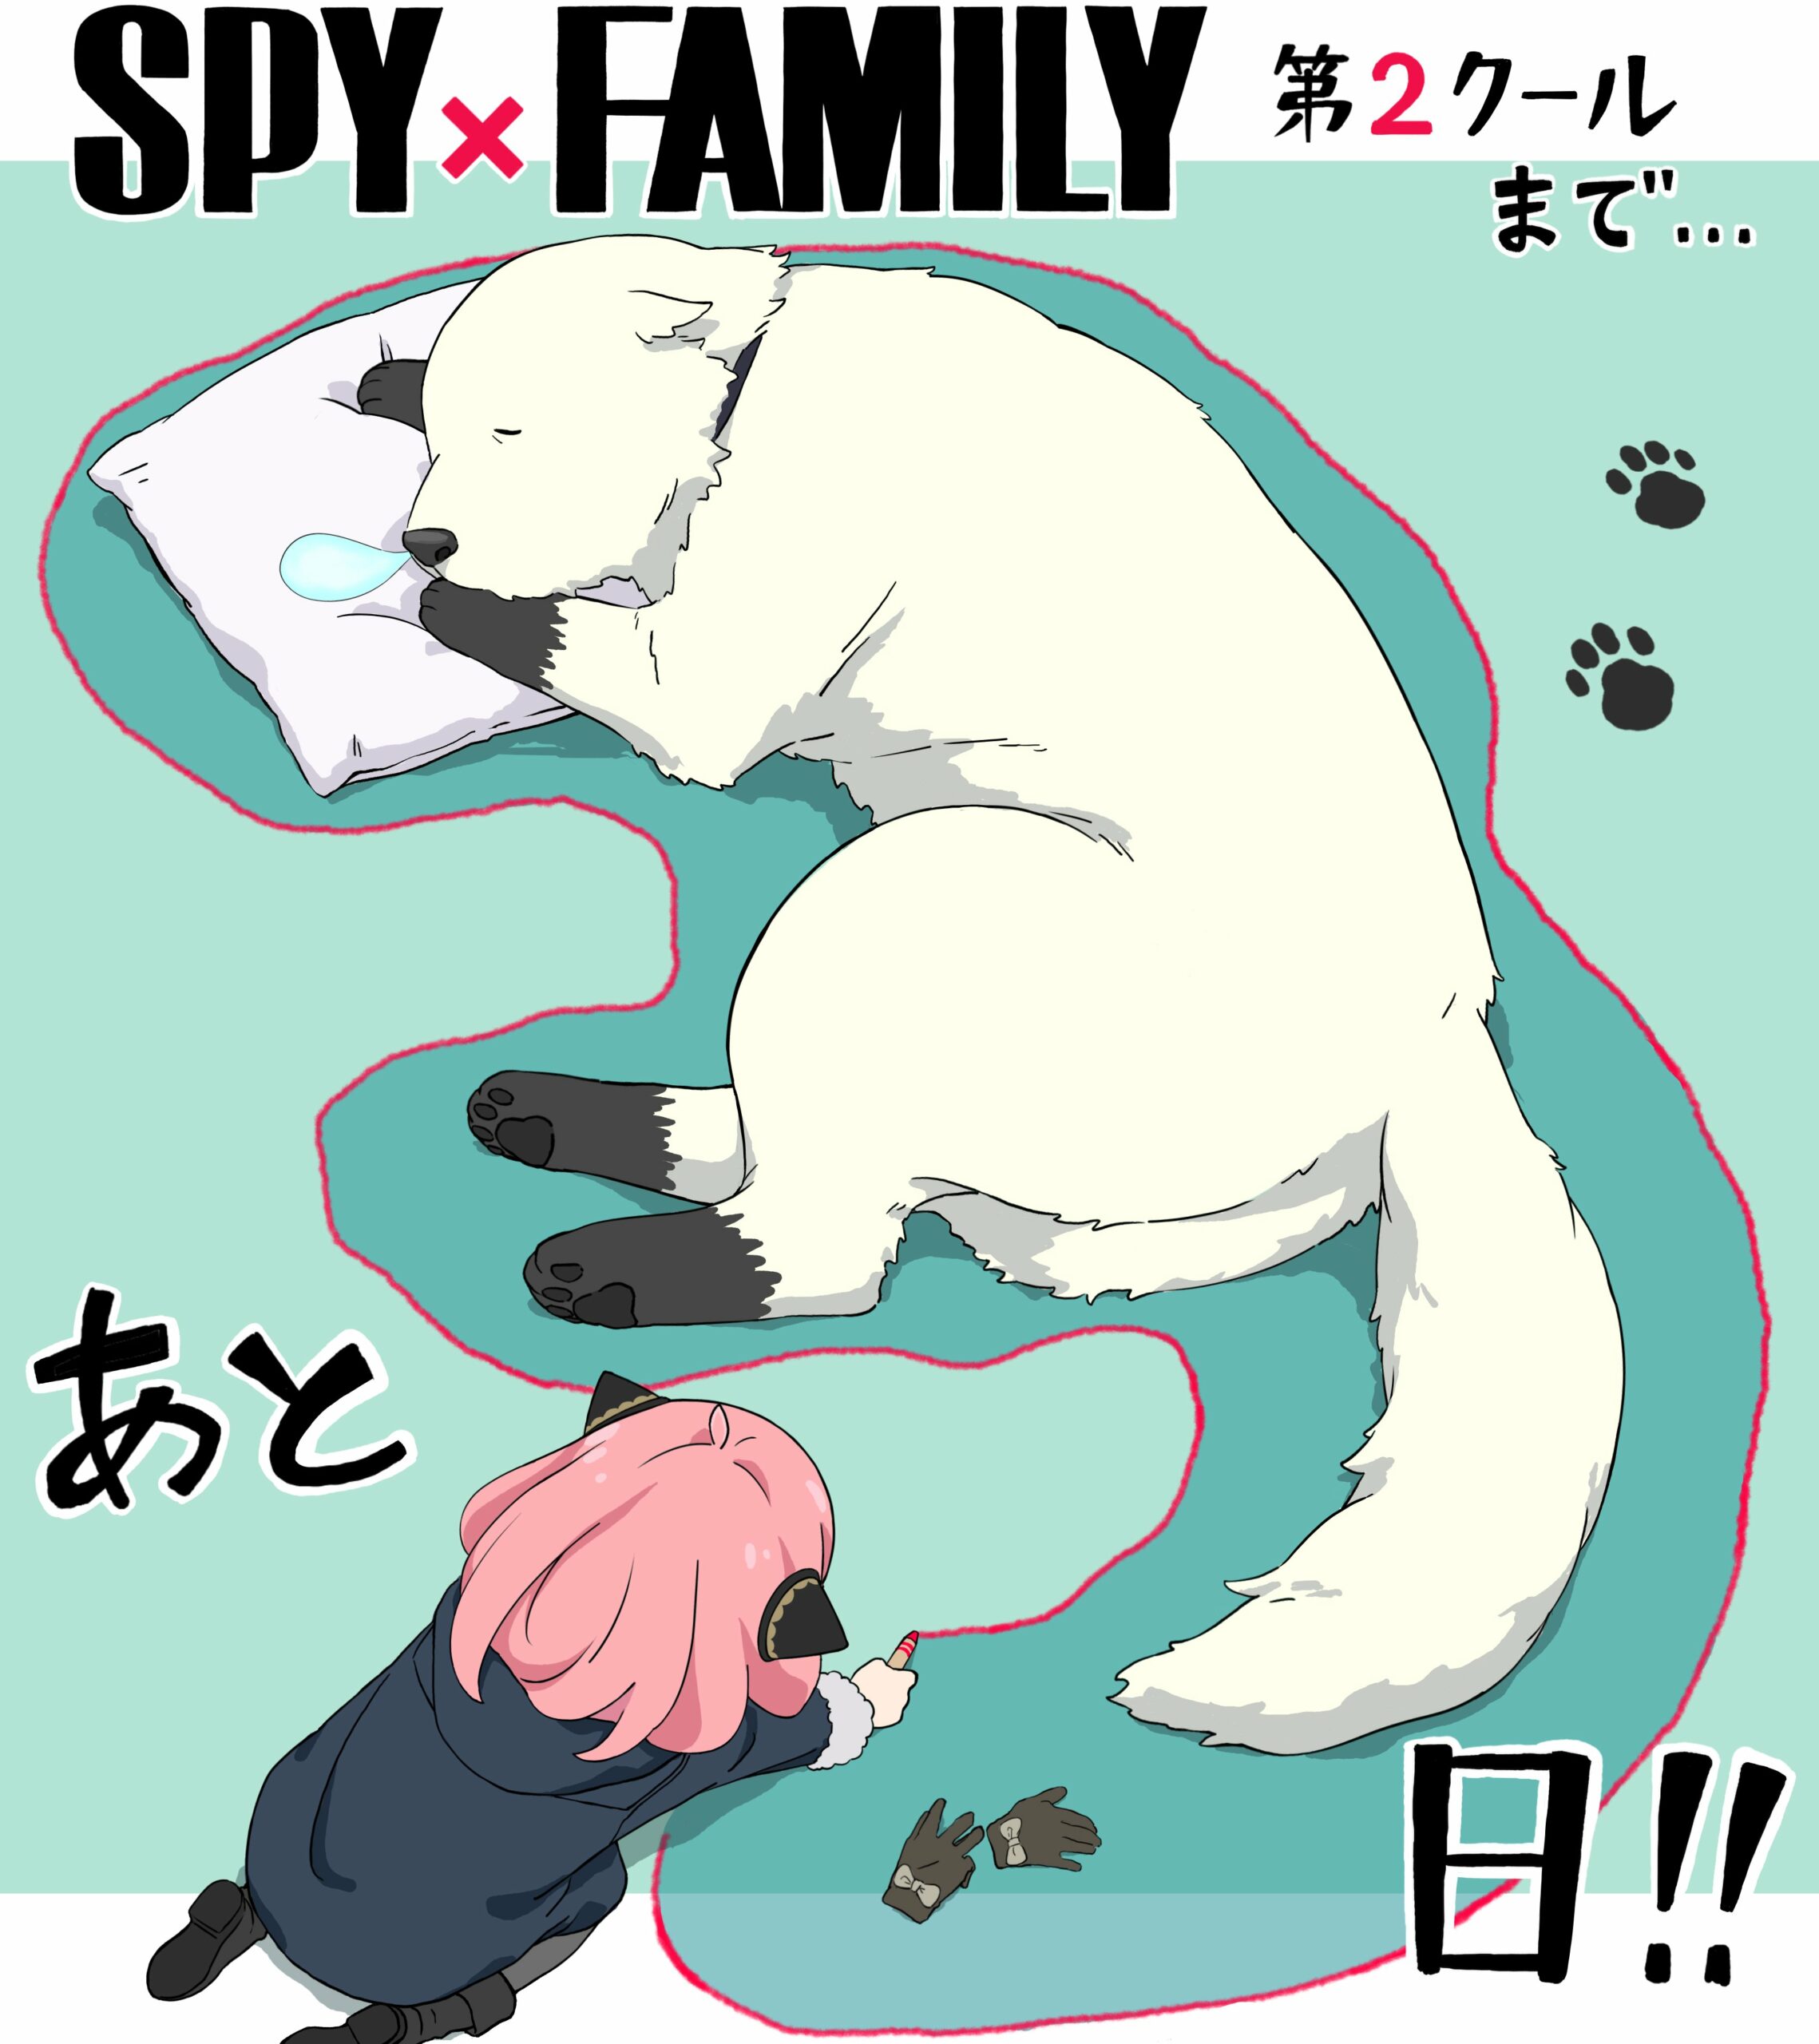 spy x family anime bond